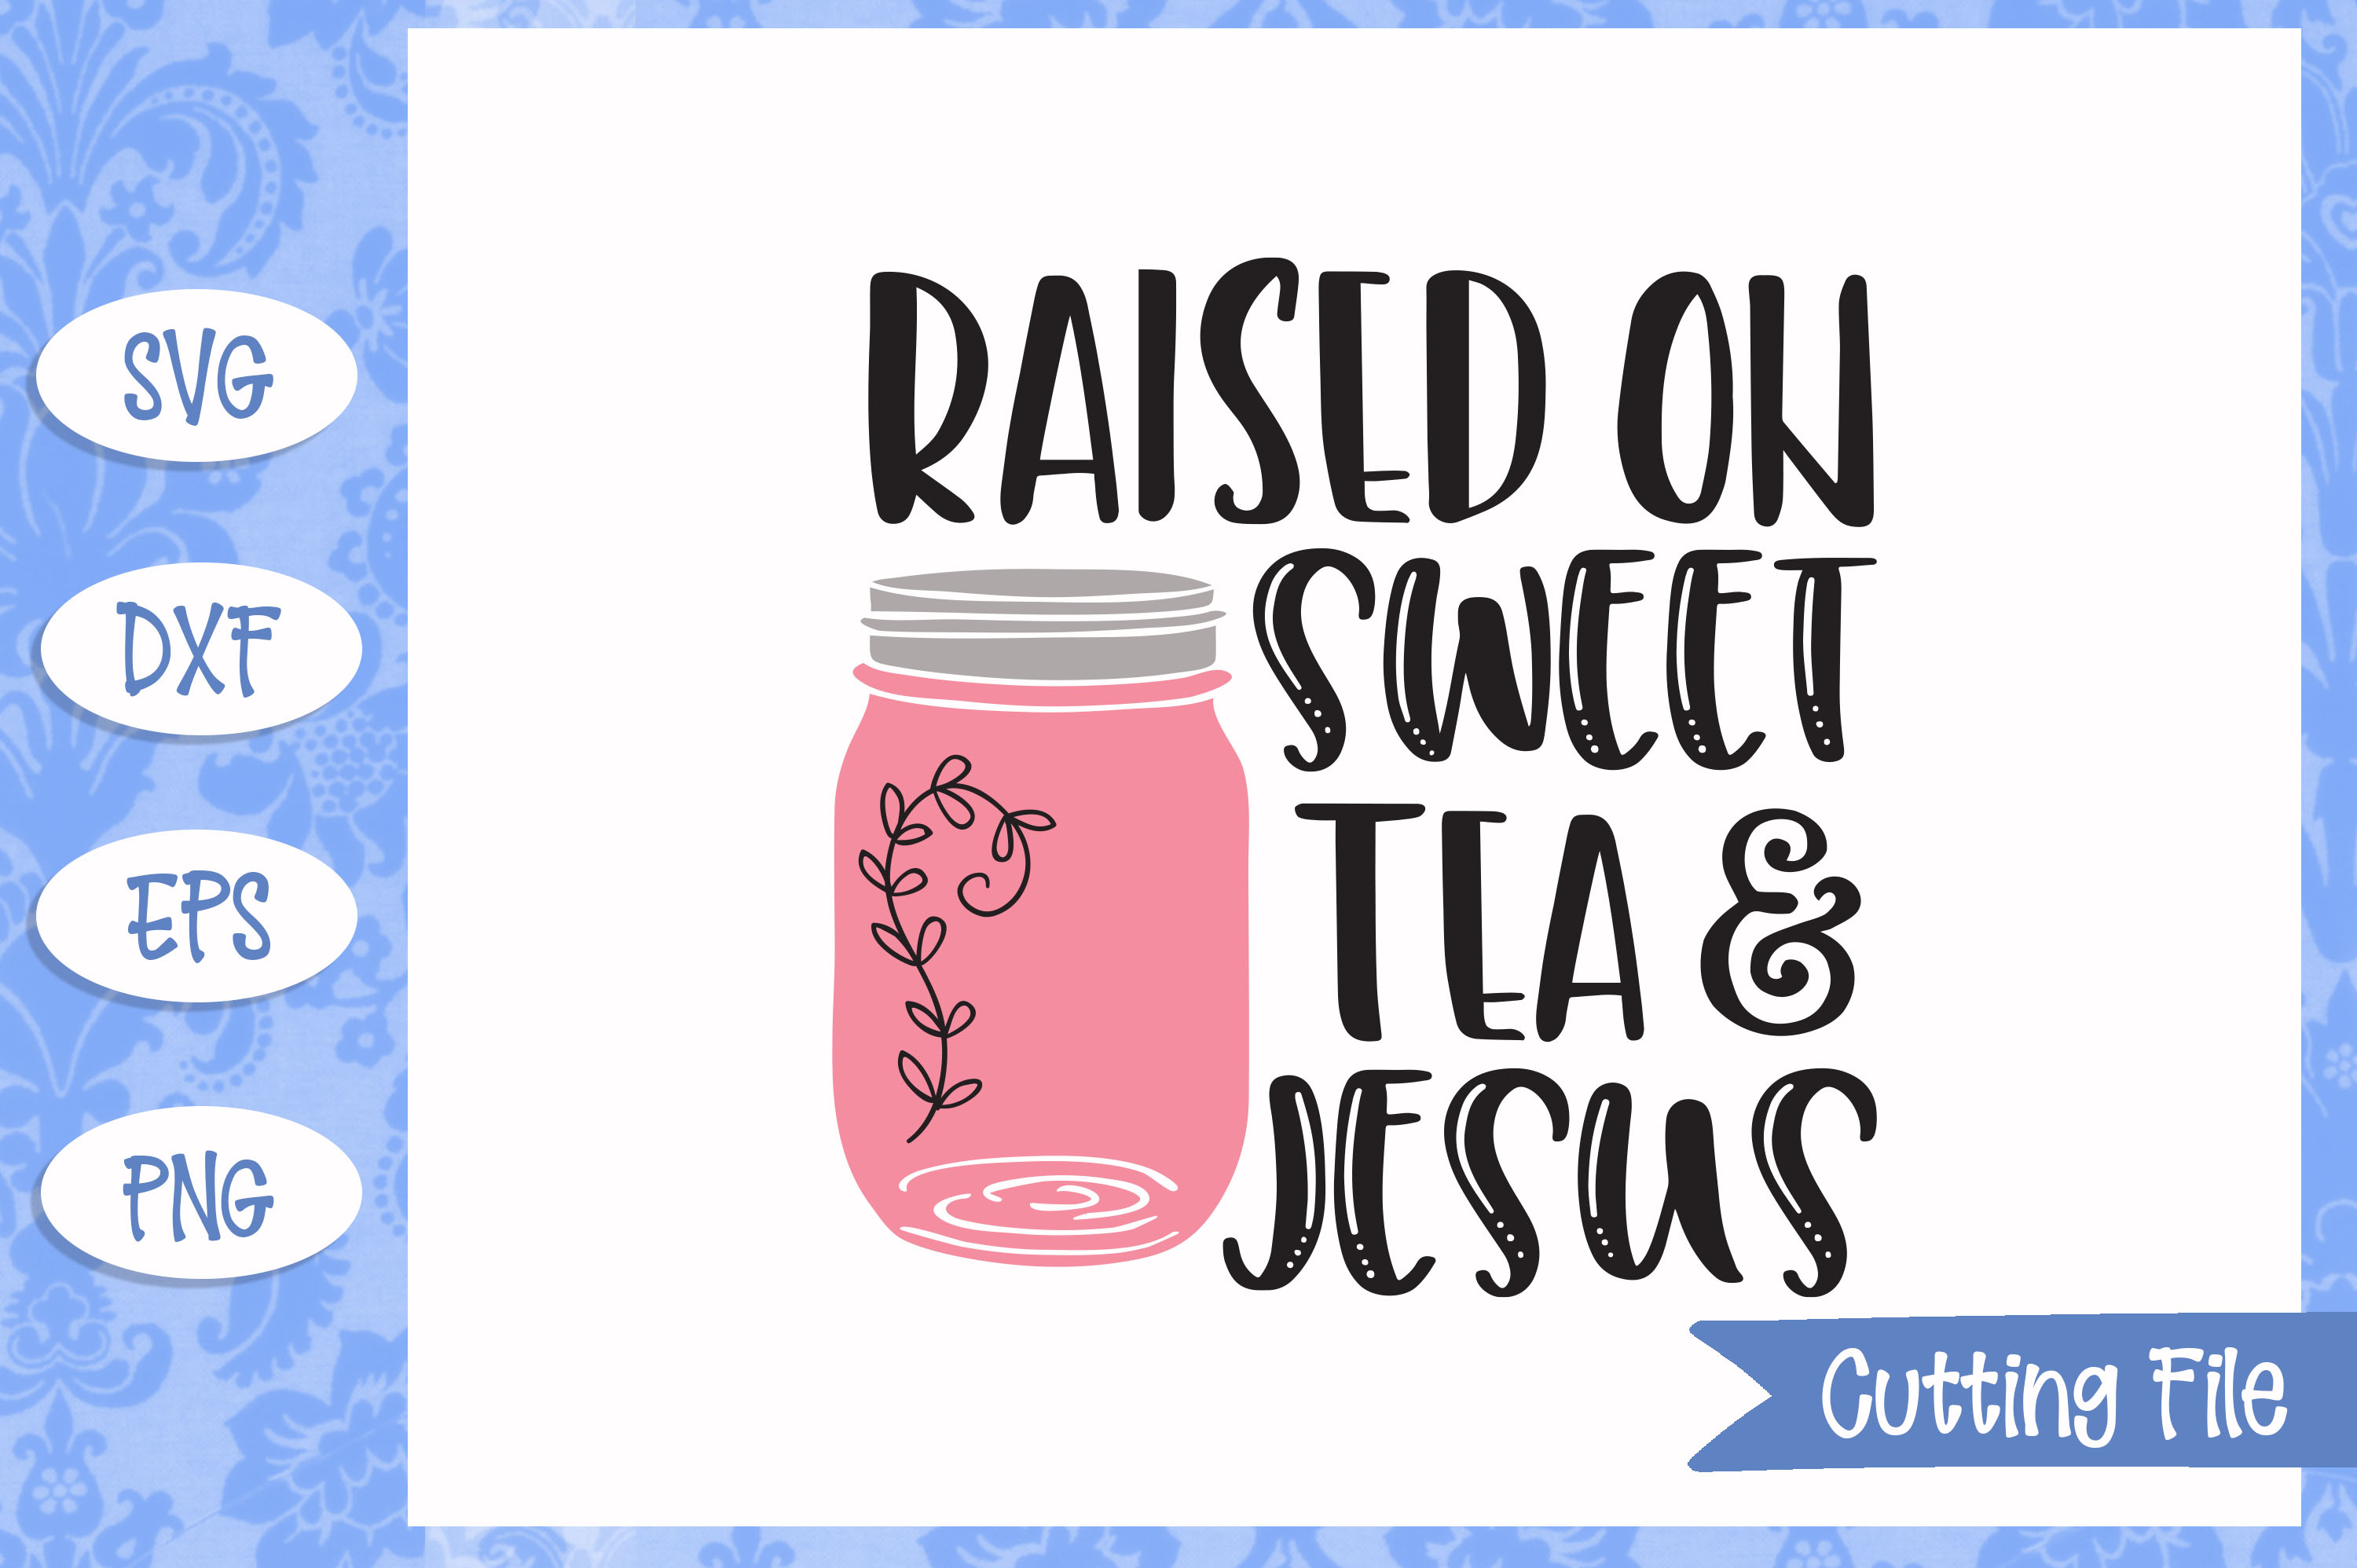 Raised on sweet tea and Jesus, SVG File